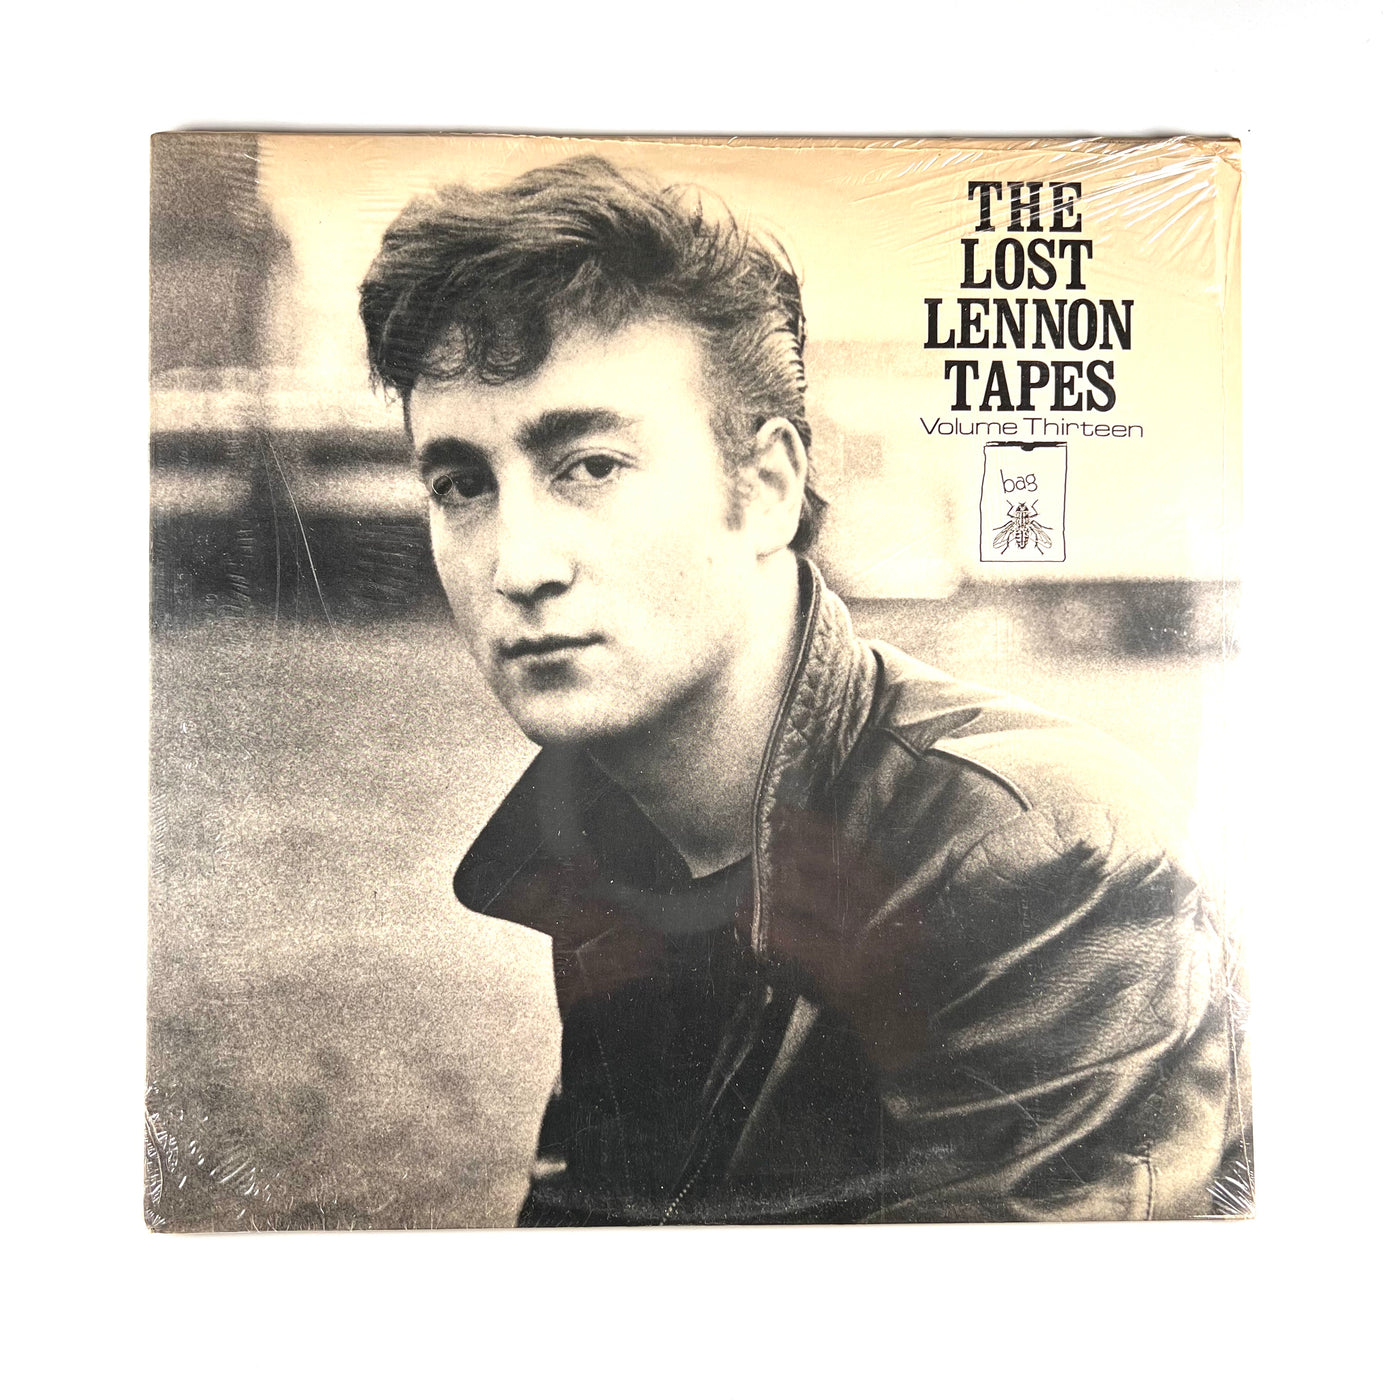 John Lennon - The Lost Lennon Tapes Volume Thirteen